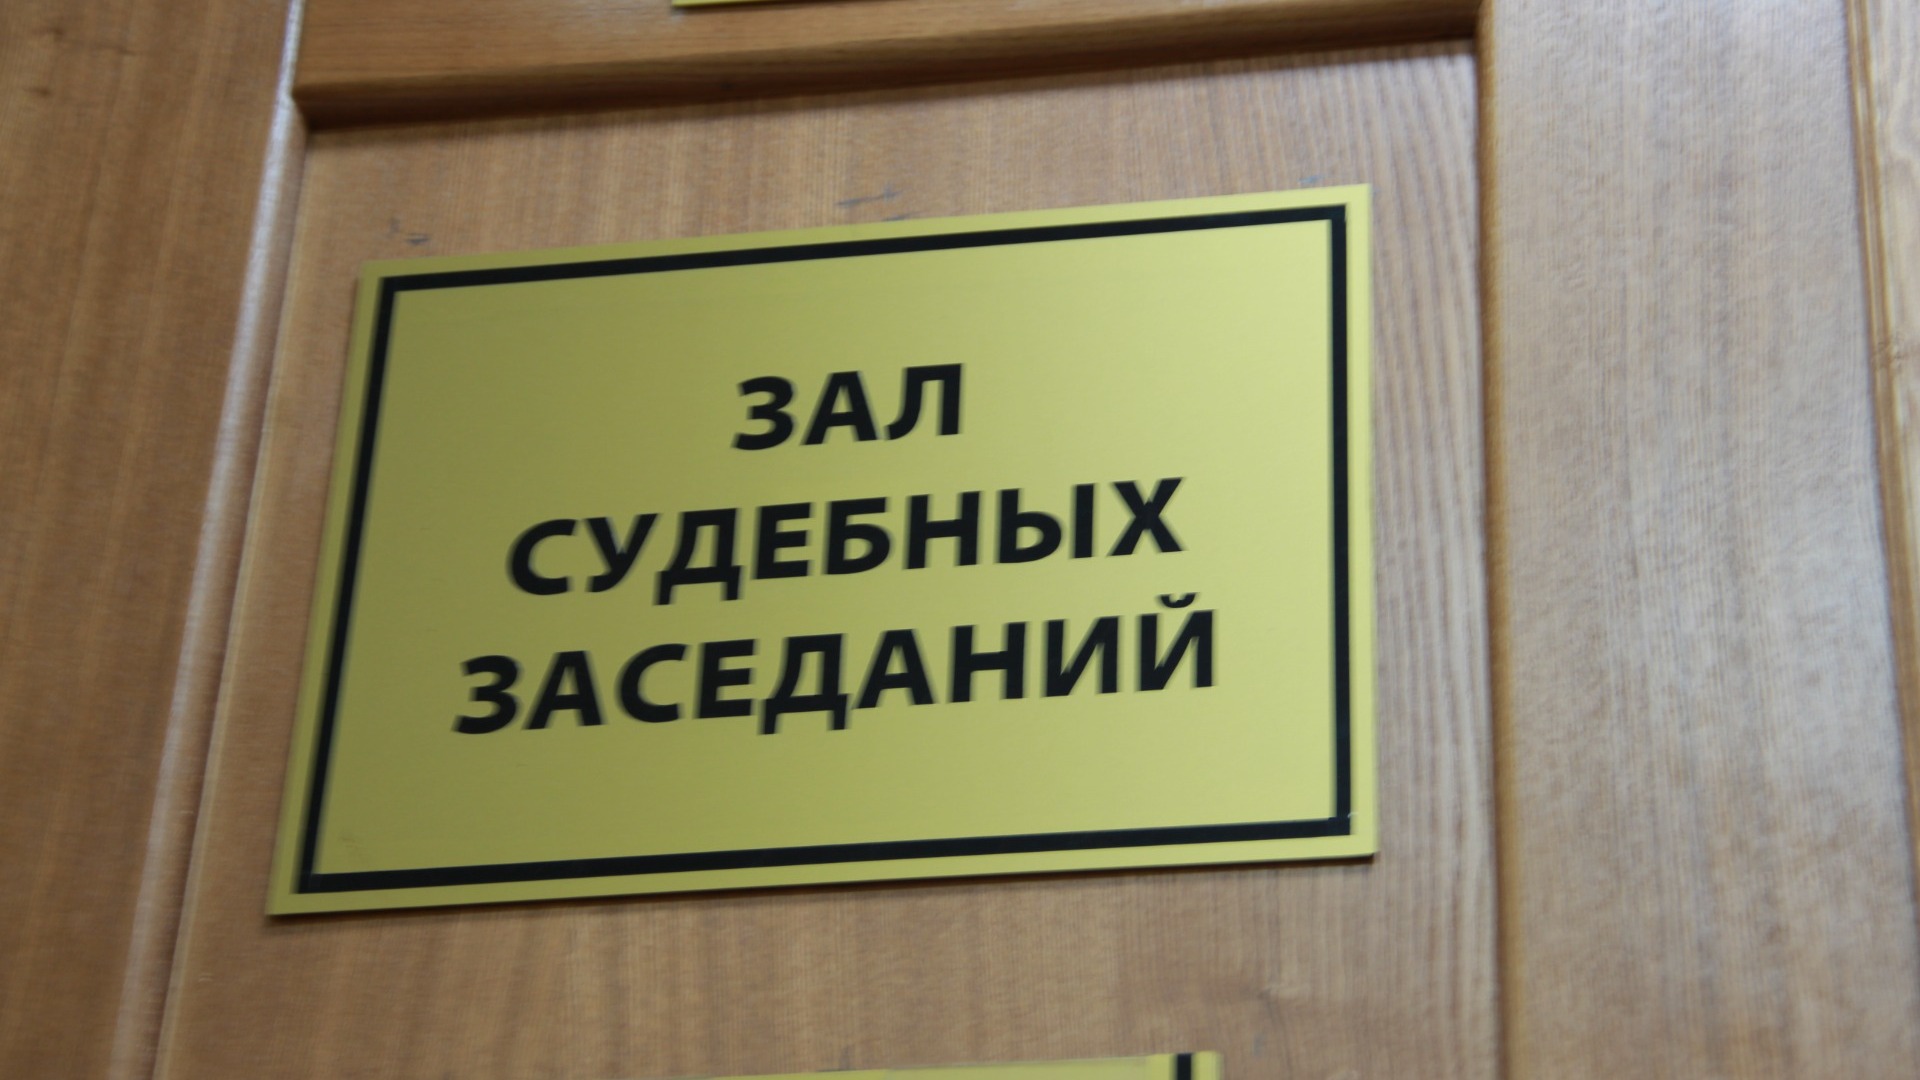 Ростовскому олигарху Саввиди отказали в выплате долга в размере 215 млн рублей